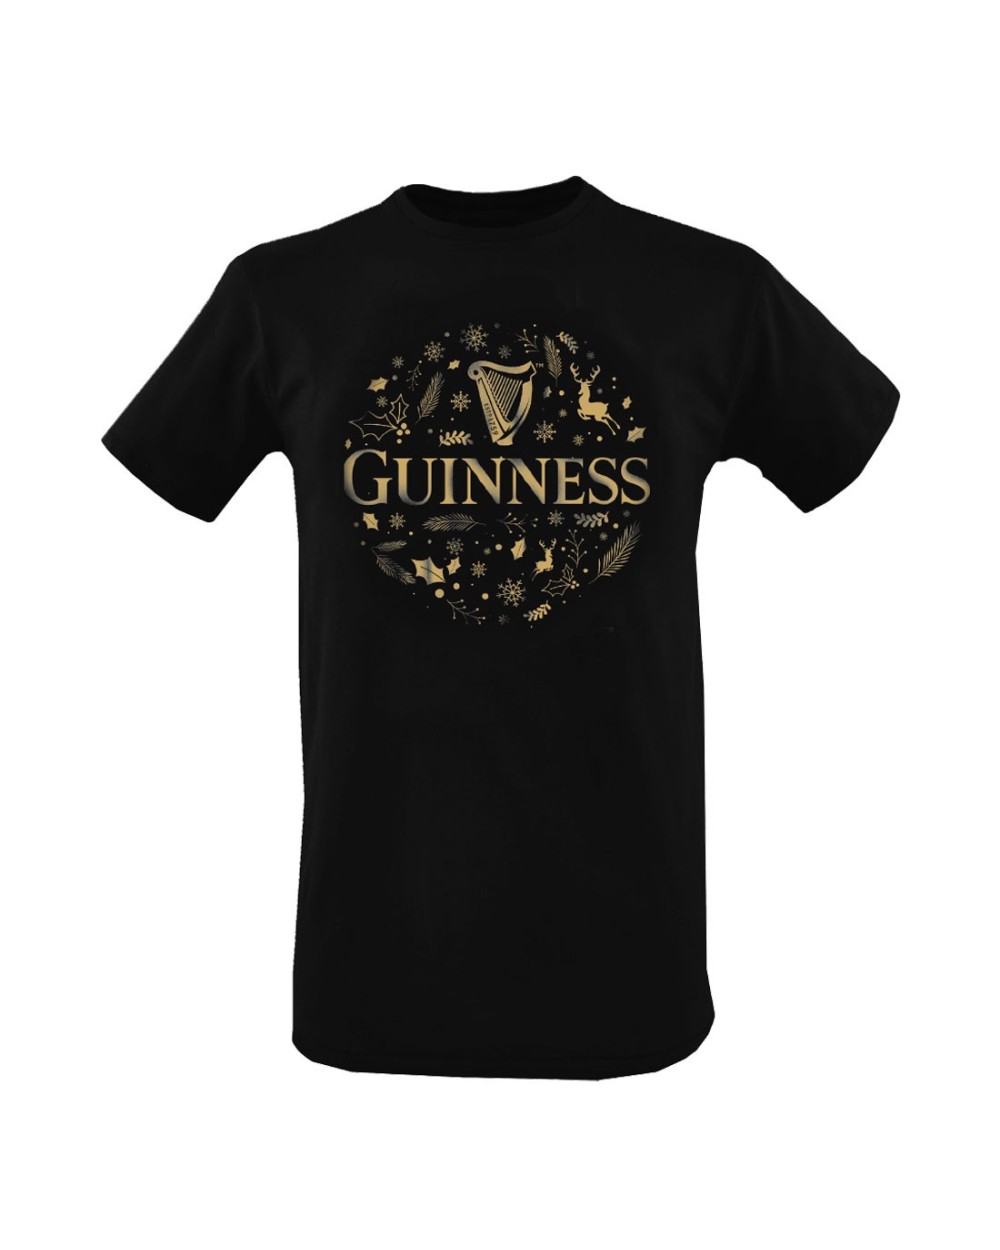 Guinness Black Christmas Men's T-shirt